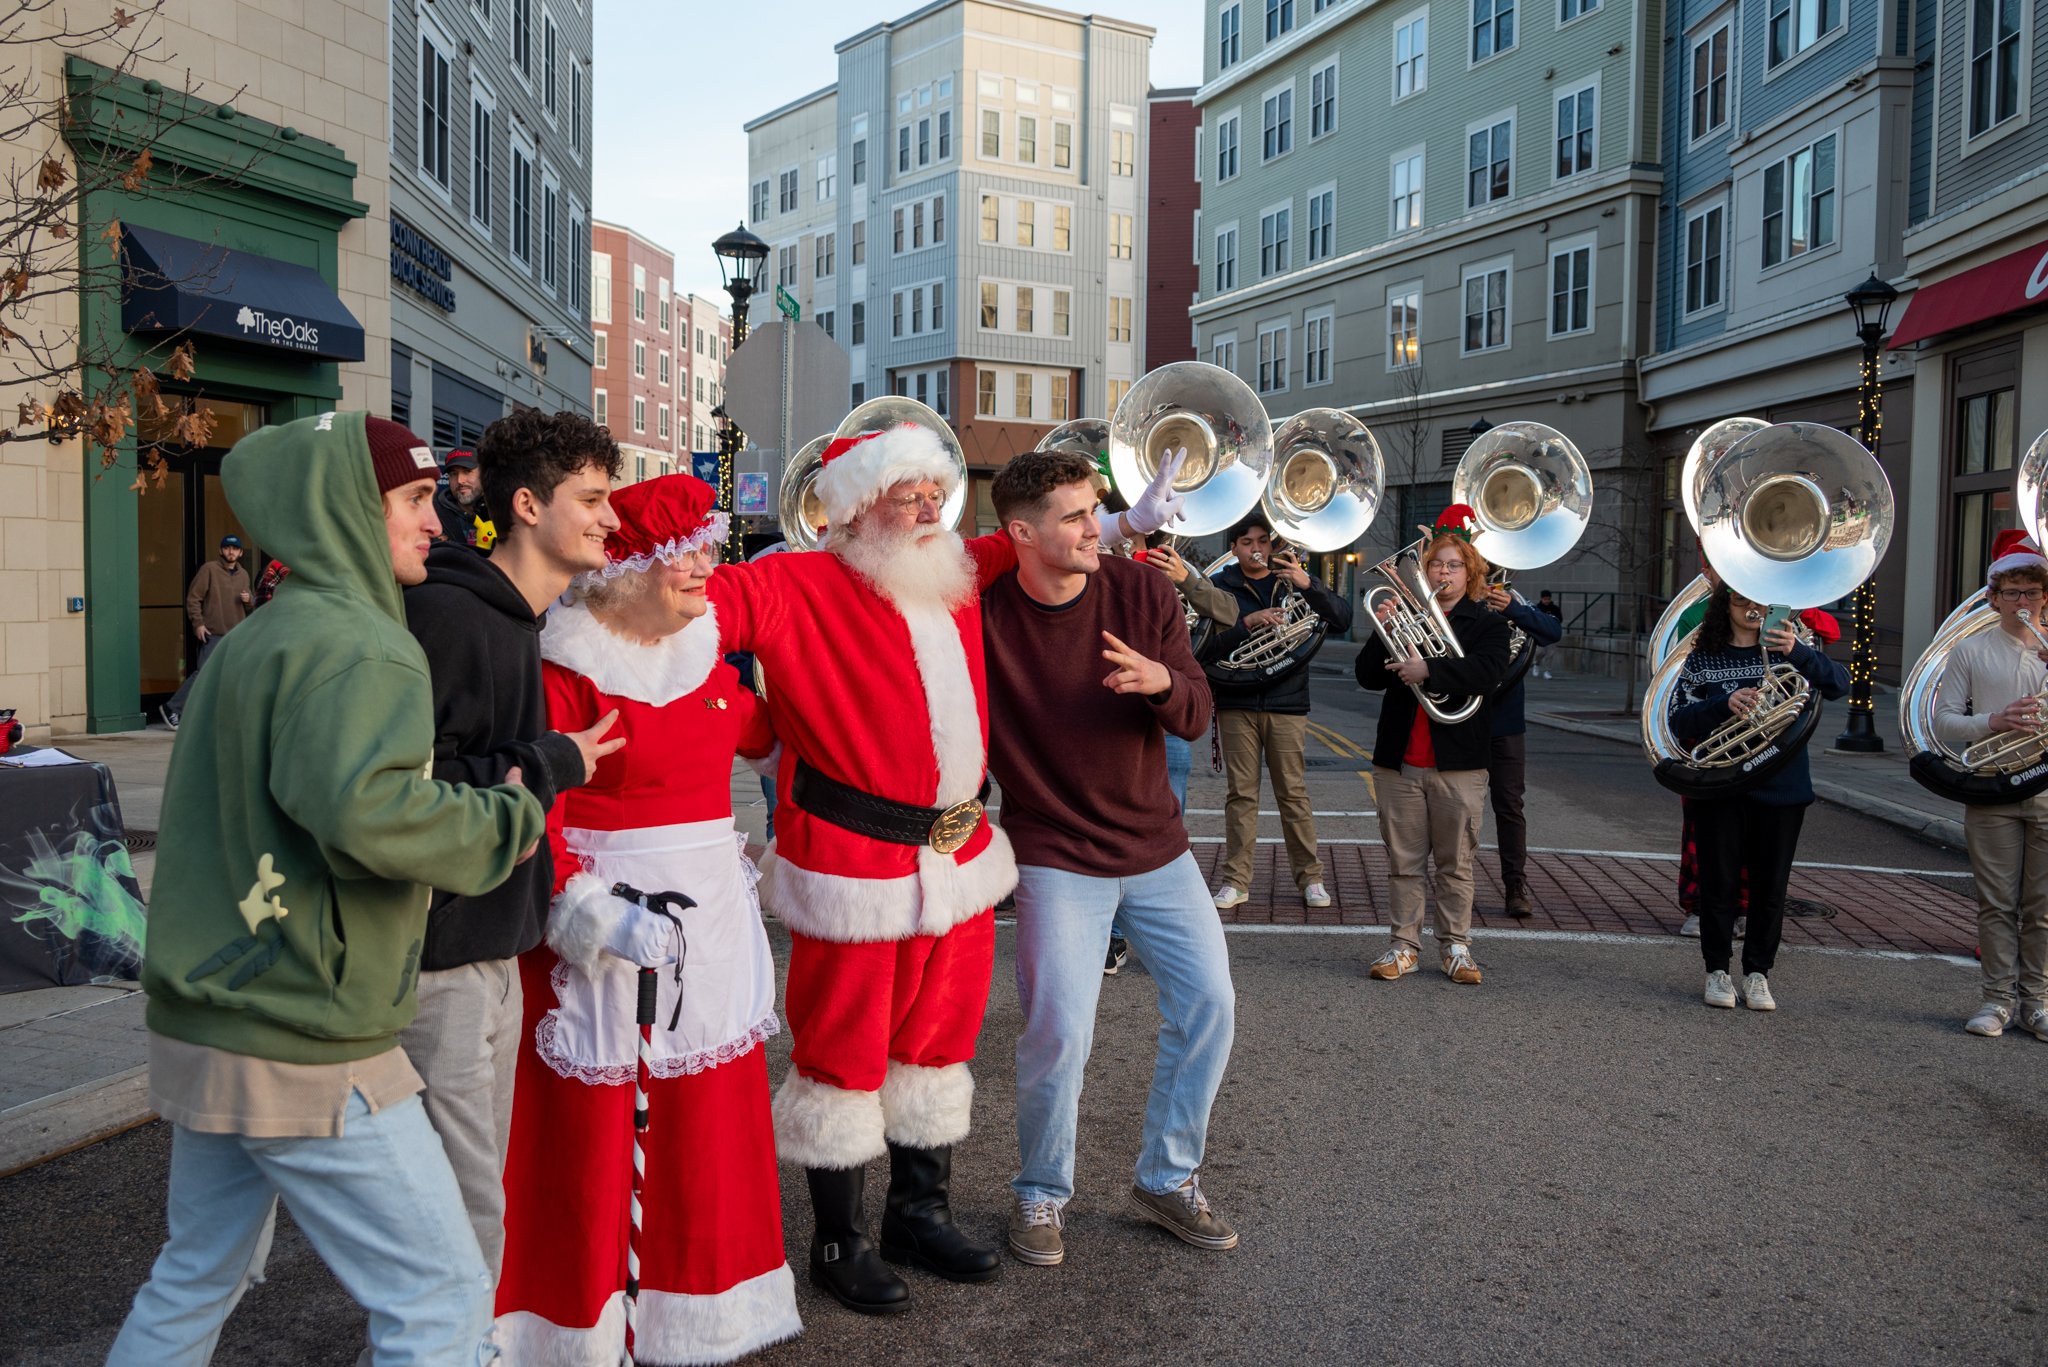 Everyone loves Santa (and tubas)!